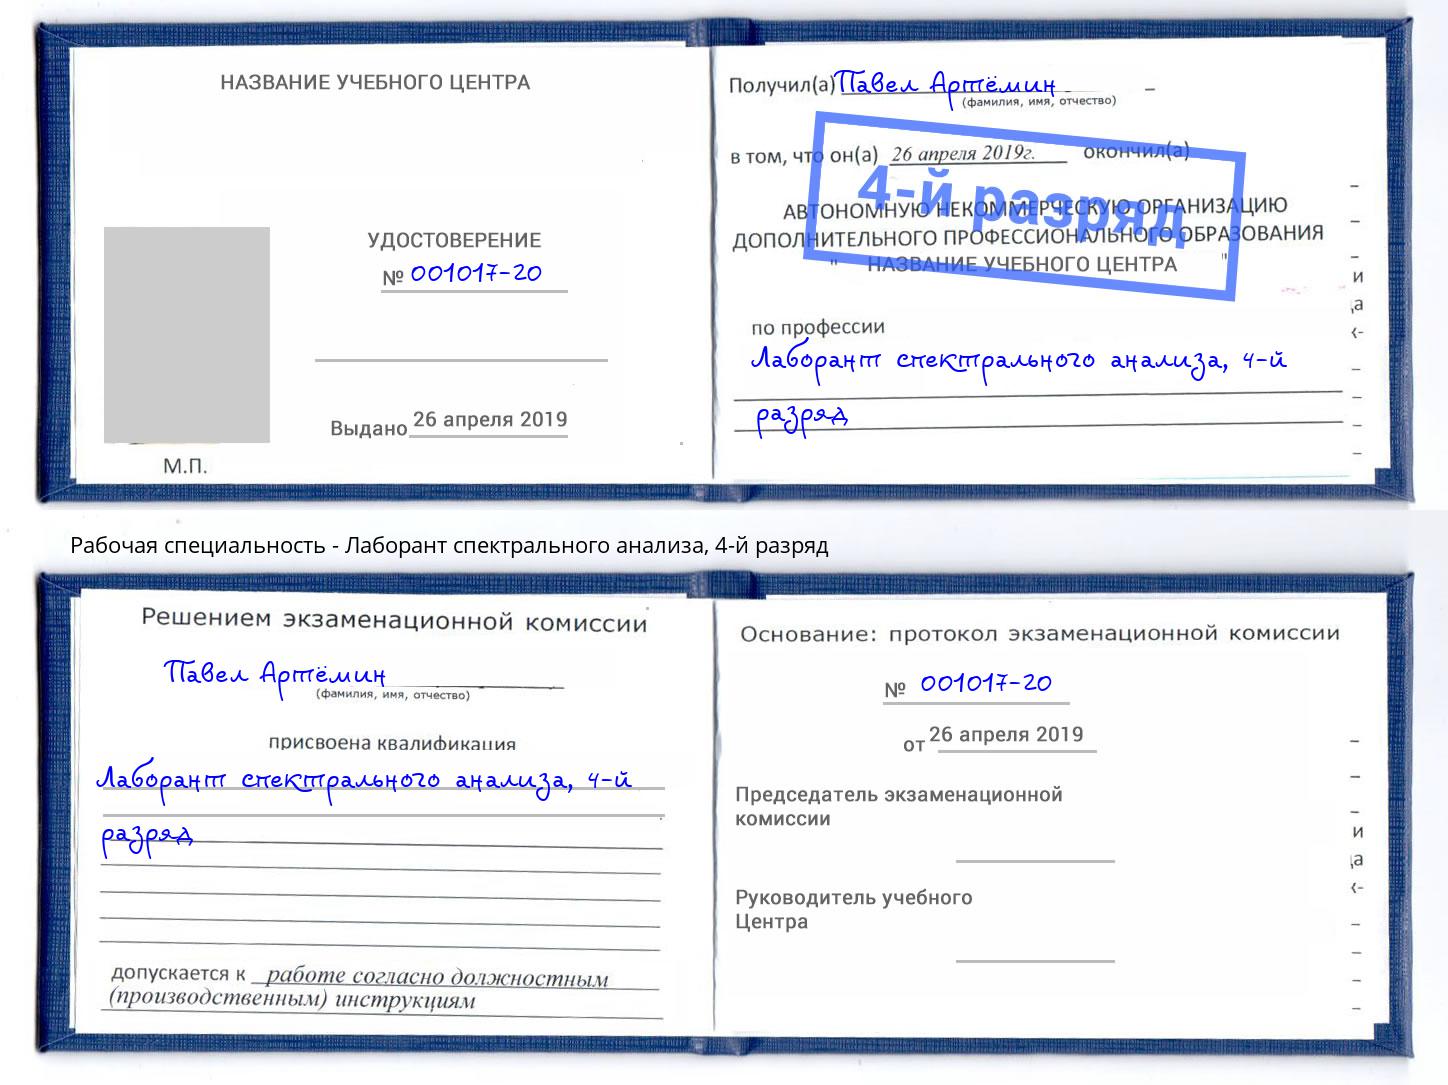 корочка 4-й разряд Лаборант спектрального анализа Ханты-Мансийск